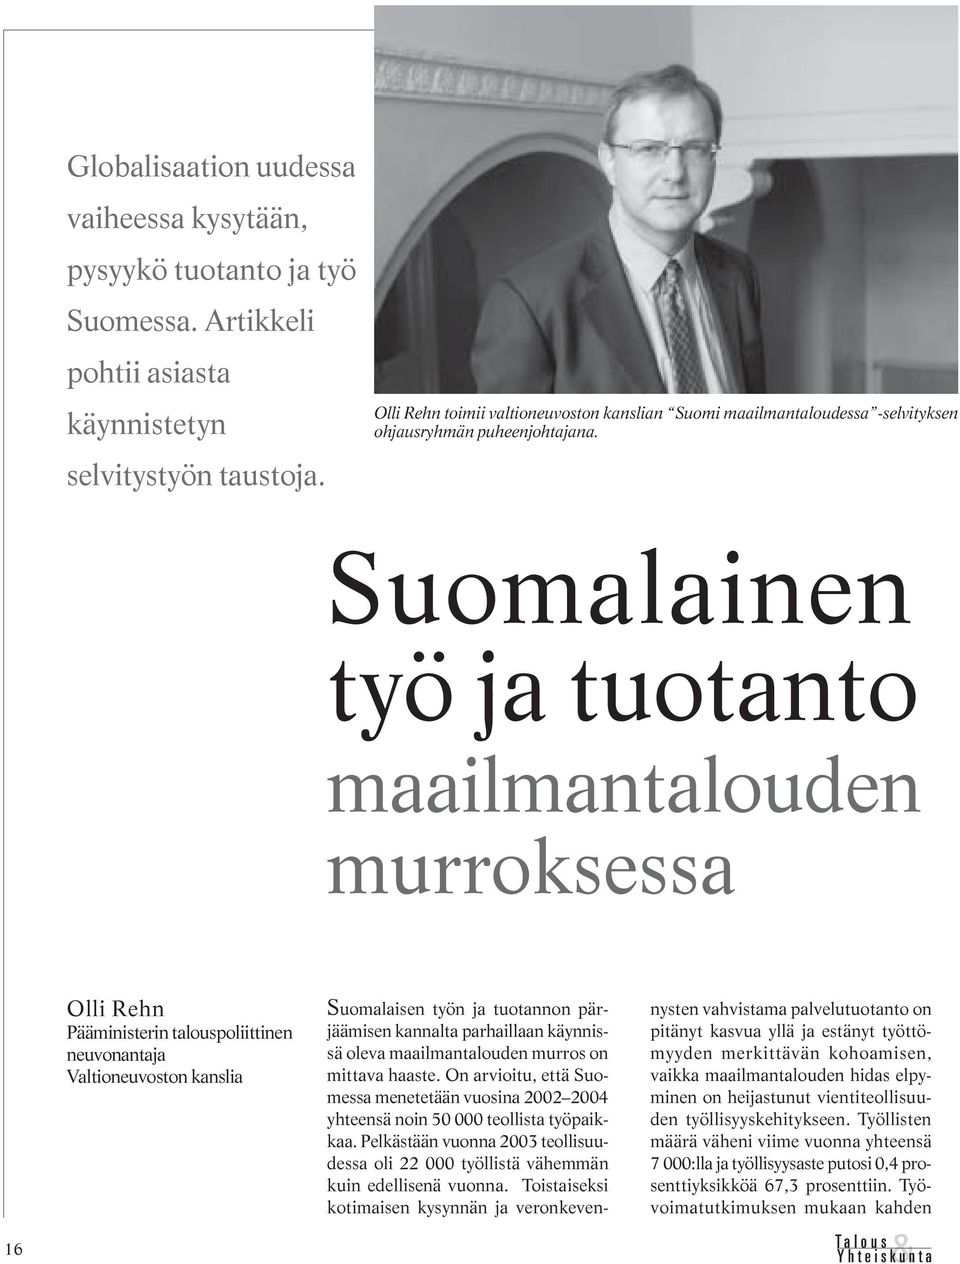 Suomalainen työ ja tuotanto maailmantalouden murroksessa 16 Olli Rehn Pääministerin talouspoliittinen neuvonantaja Valtioneuvoston kanslia Suomalaisen työn ja tuotannon pärjäämisen kannalta